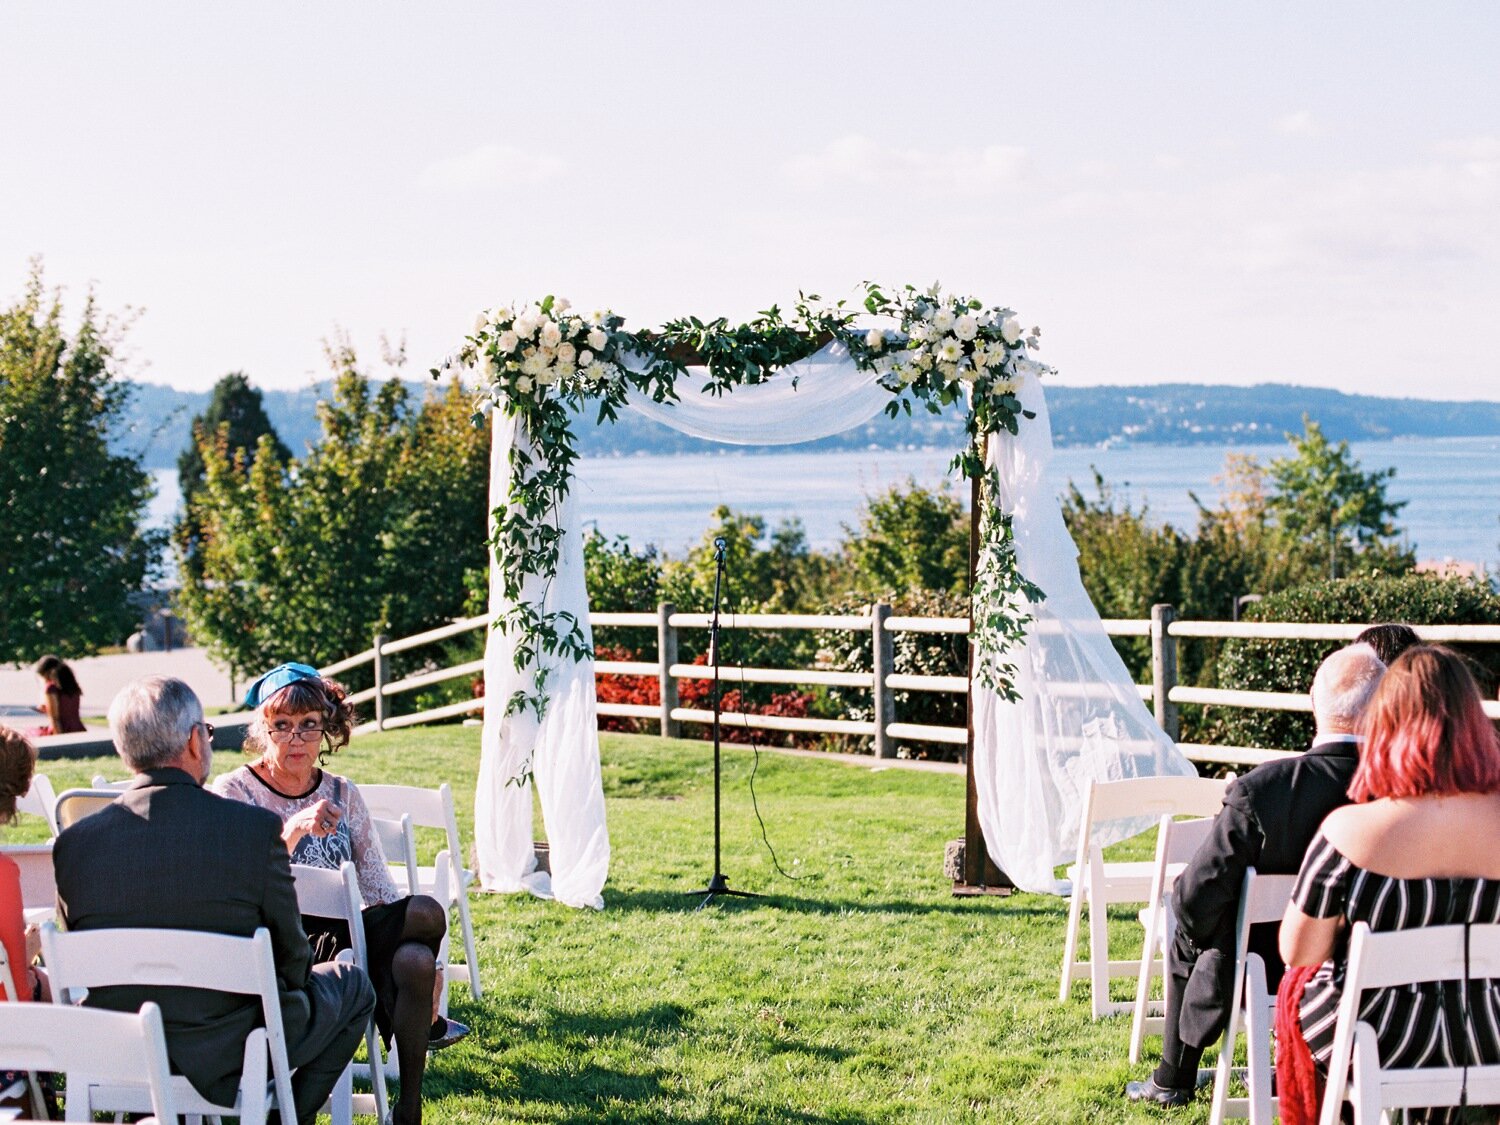 rosehill community center outdoor wedding ceremony 2.jpg